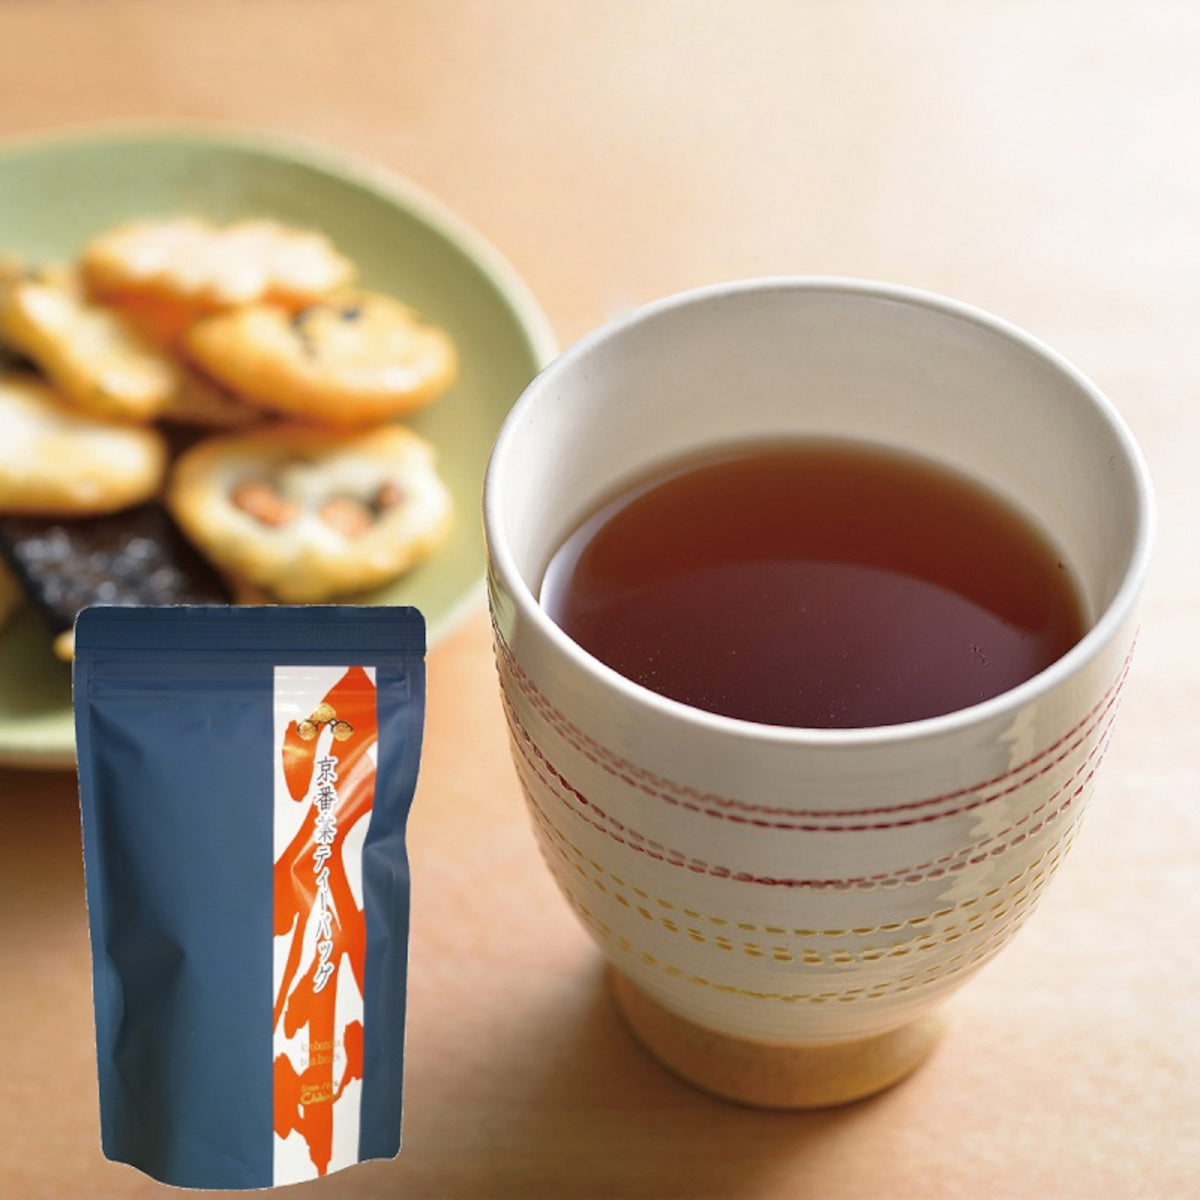 Kyobancha (roasted Japanese green tea) - 30 Tea bags